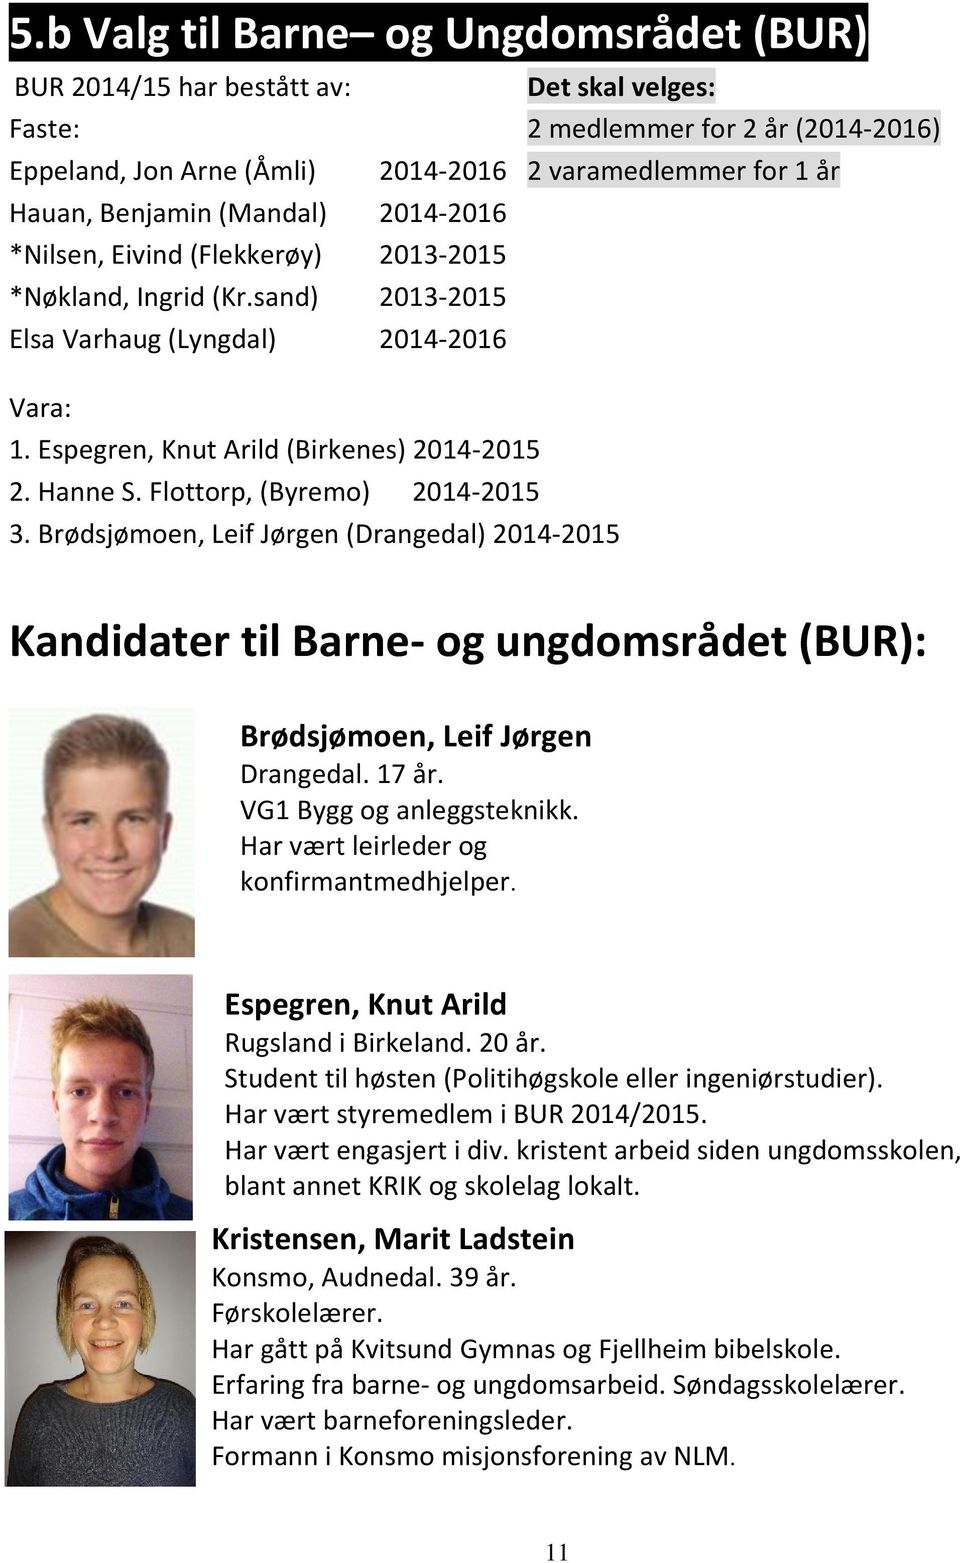 Flottorp, (Byremo) 2014-2015 3. Brødsjømoen, Leif Jørgen (Drangedal) 2014-2015 Kandidater til Barne- og ungdomsrådet (BUR): Brødsjømoen, Leif Jørgen Drangedal. 17 år. VG1 Bygg og anleggsteknikk.